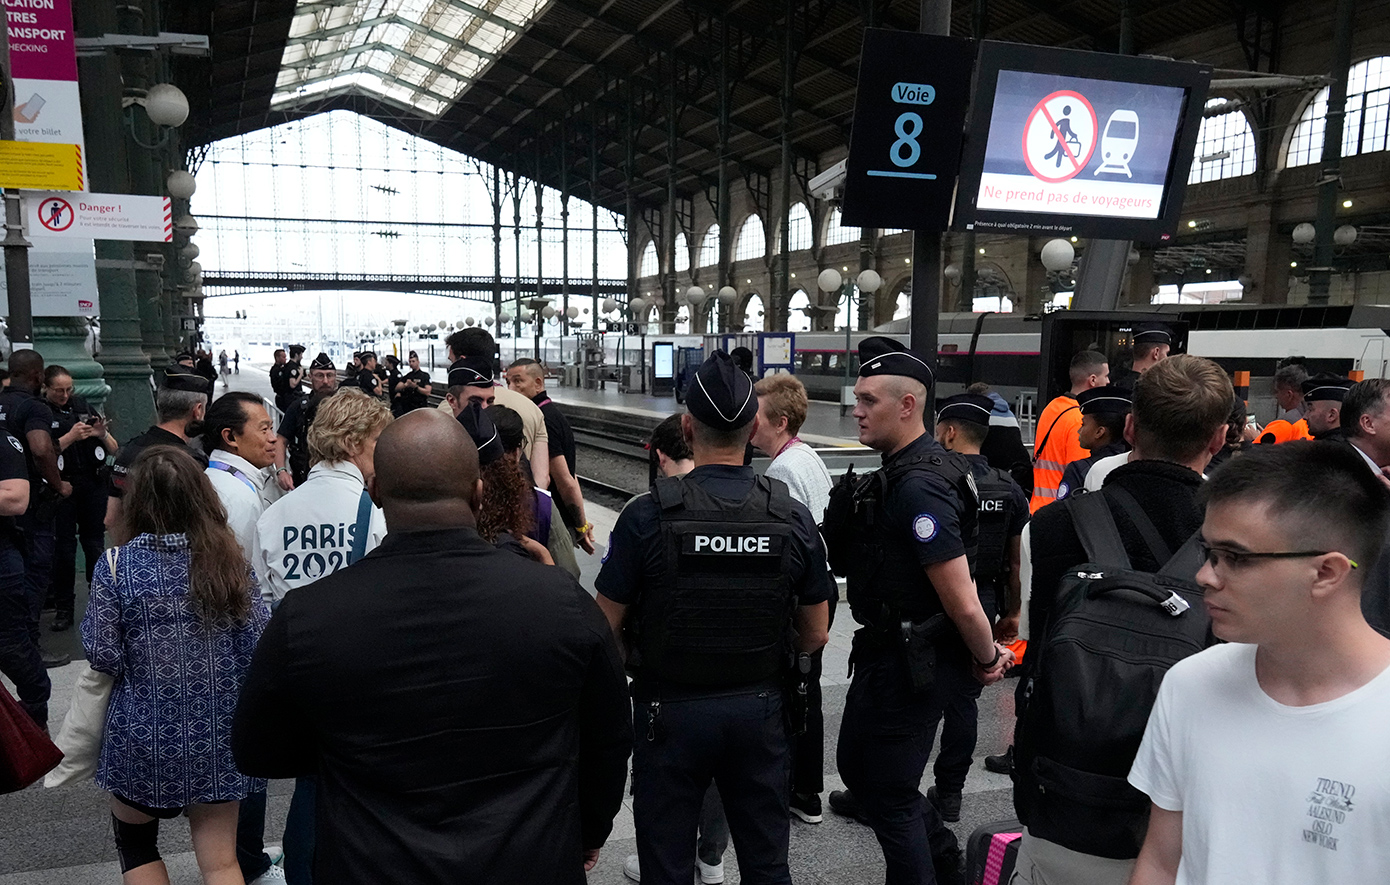 Δεν αποκλείεται η ανάμειξη ξένης χώρας, λέει ο Γάλλος υπουργός Εσωτερικών για τη δολιοφθορά στο σιδηροδρομικό δίκτυο